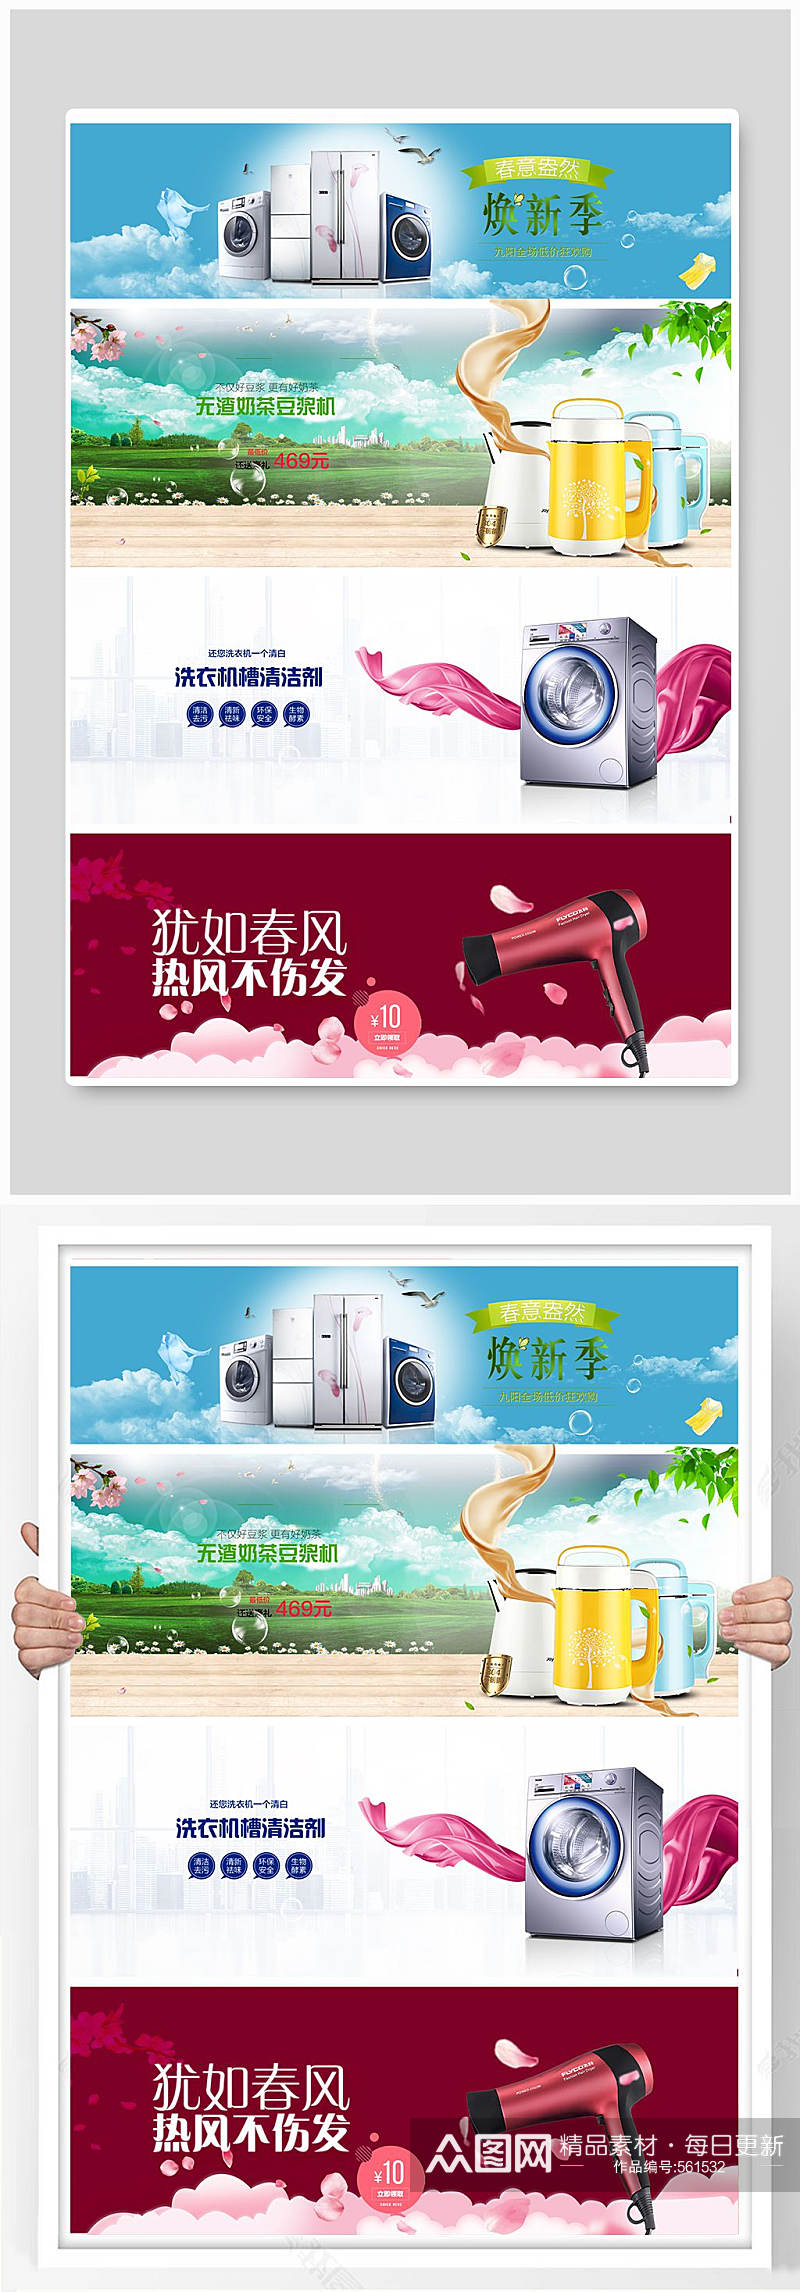 冰箱洗衣机家电宣传海报素材